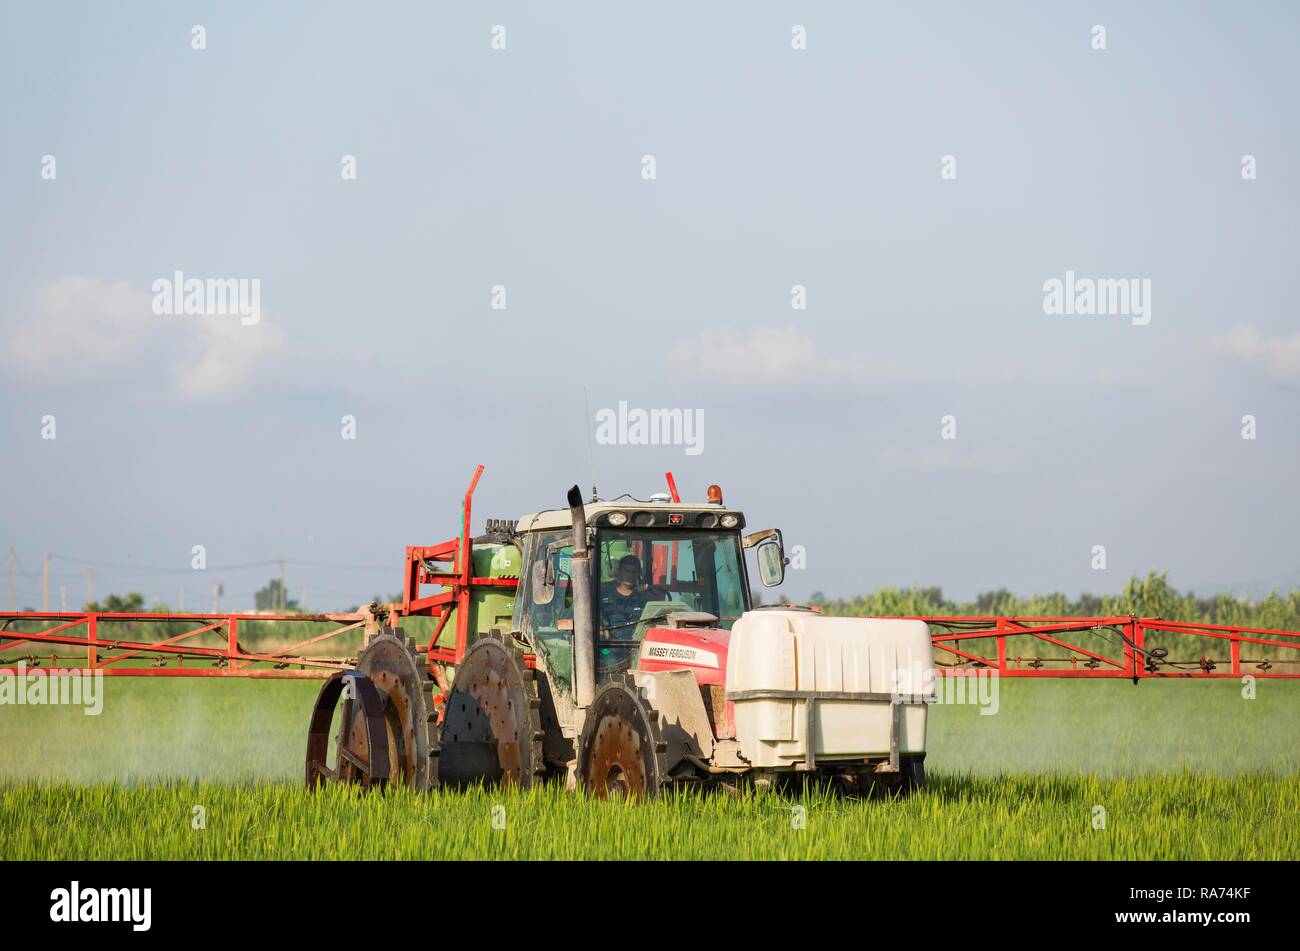 Ein Traktor Sprays ein Fungizid auf die Felder von Reis (Oryza sativa), im Juli, Umgebung des Ebro-delta Natur Stockfoto